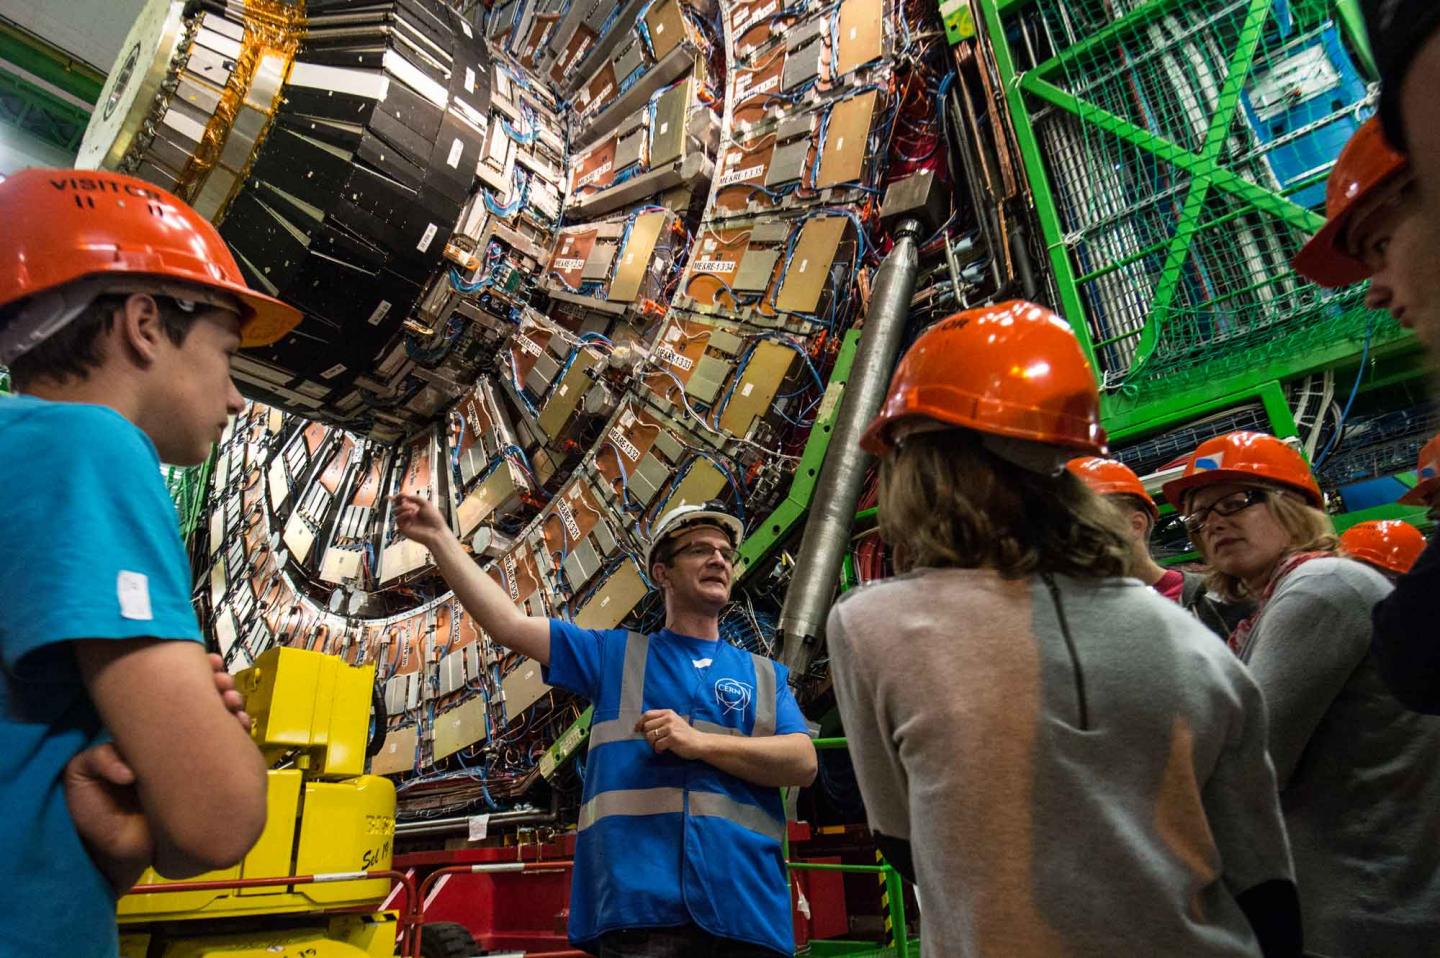 Le CERN souffle ses bougies avec ses voisins